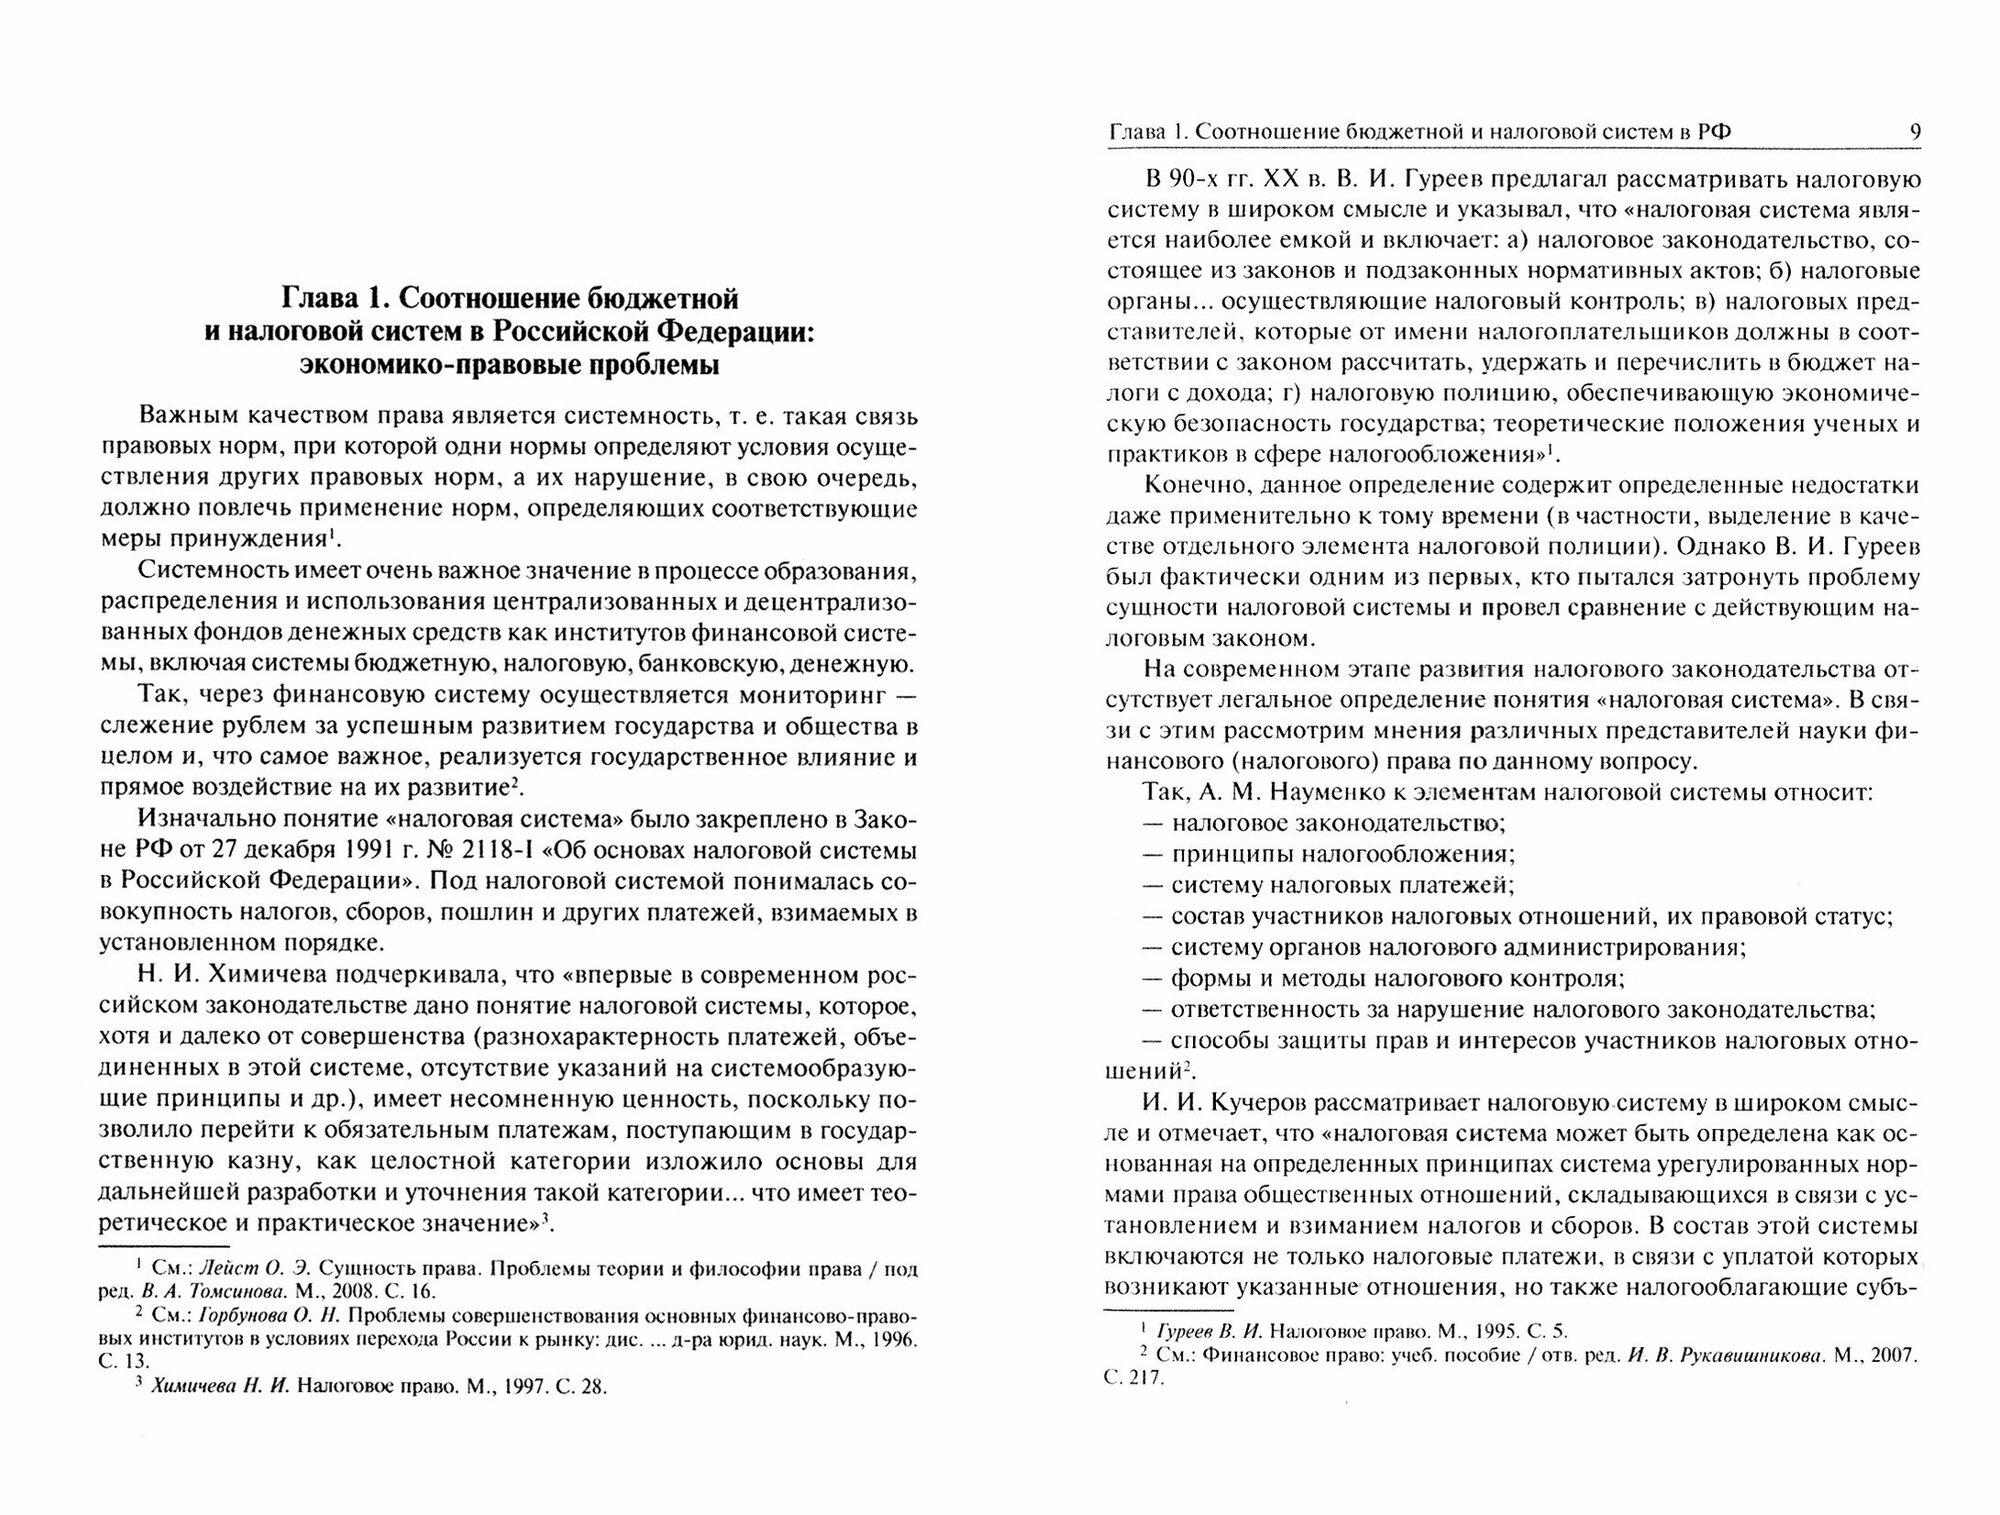 Бюджетная система и система налогов и сборов РФ. Учебник - фото №2